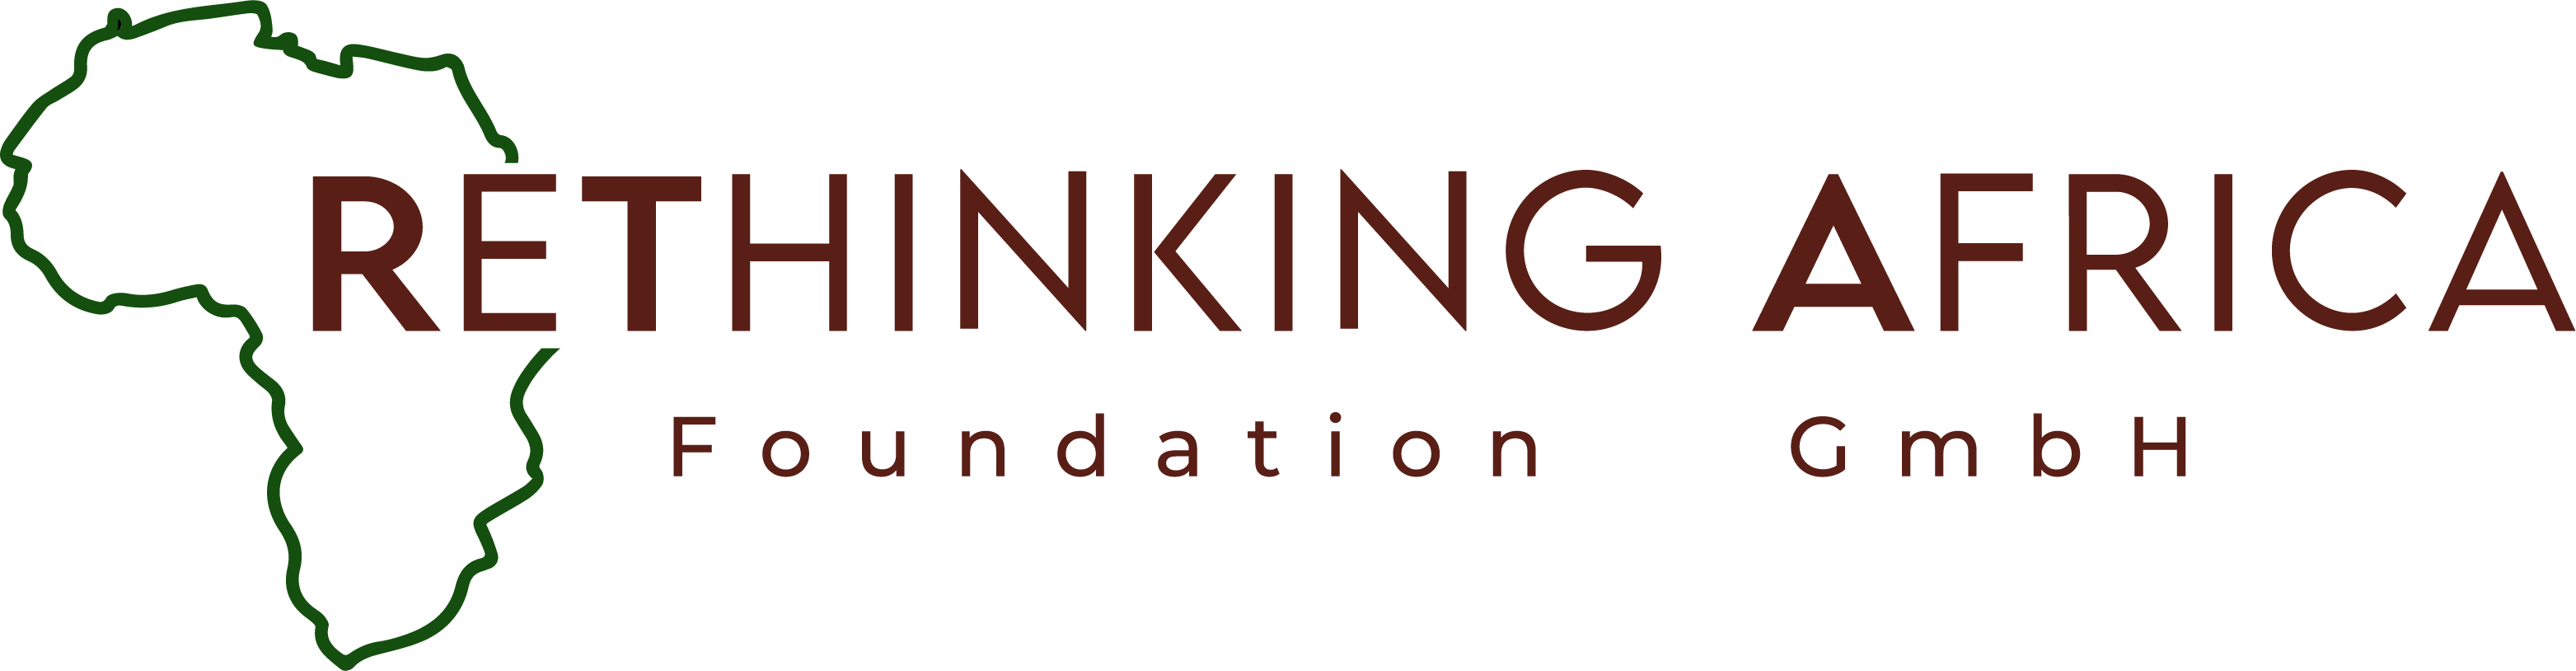 ReThinking Africa Foundation GmbH